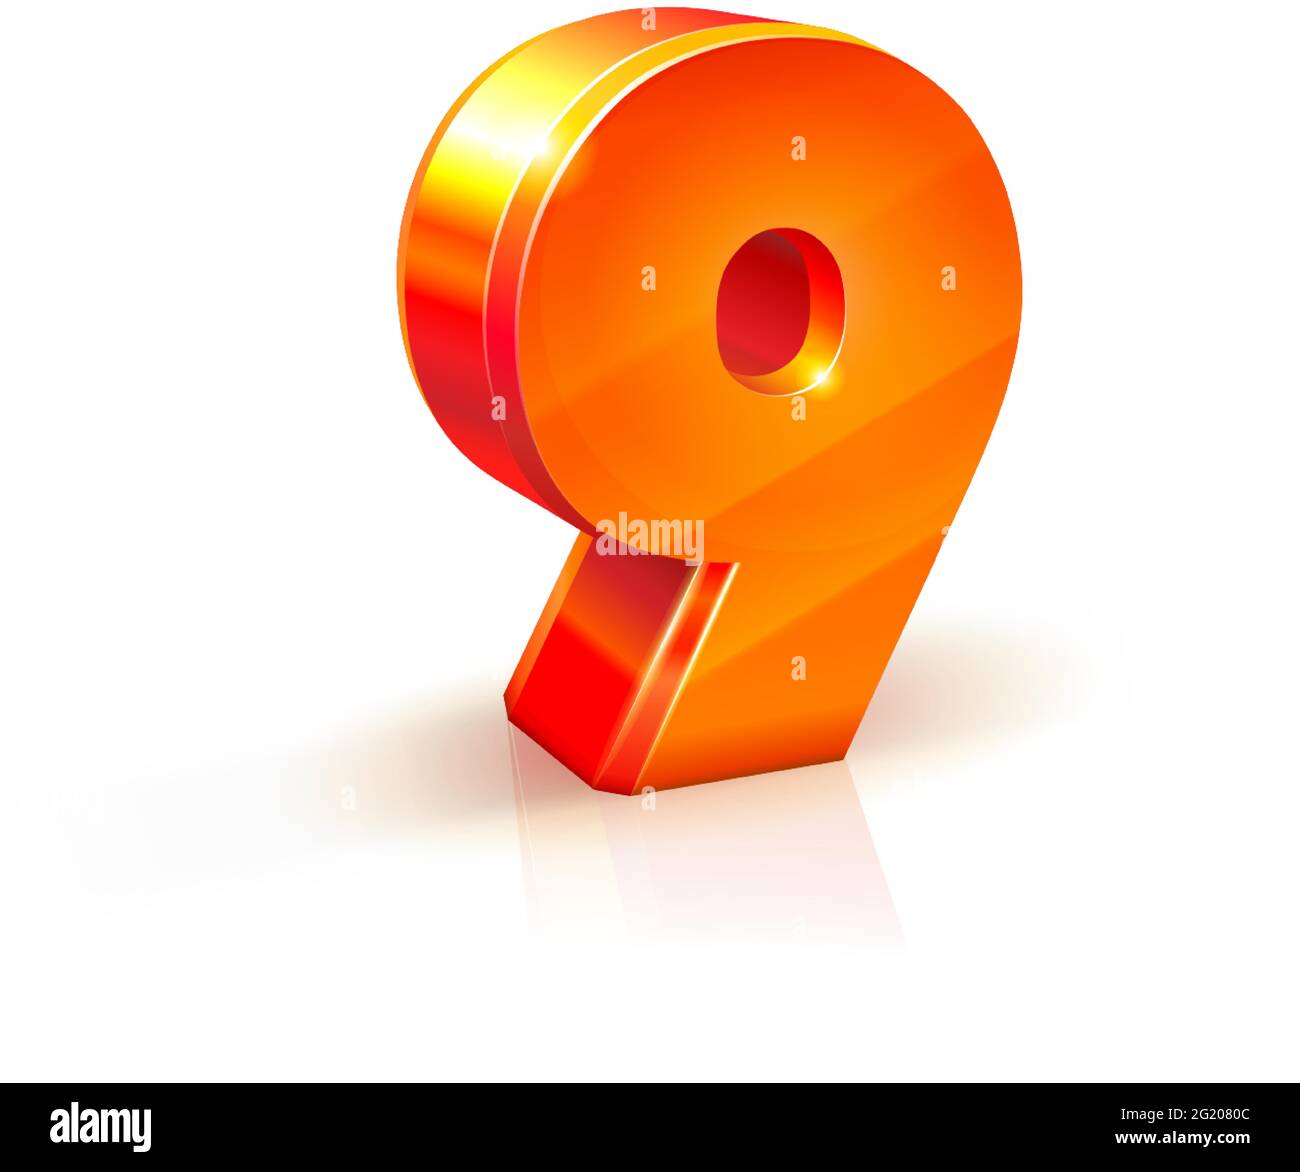 3d orange-rouge réaliste image volumétrique numéro 9 neuf. Isolé sur fond blanc Illustration de Vecteur